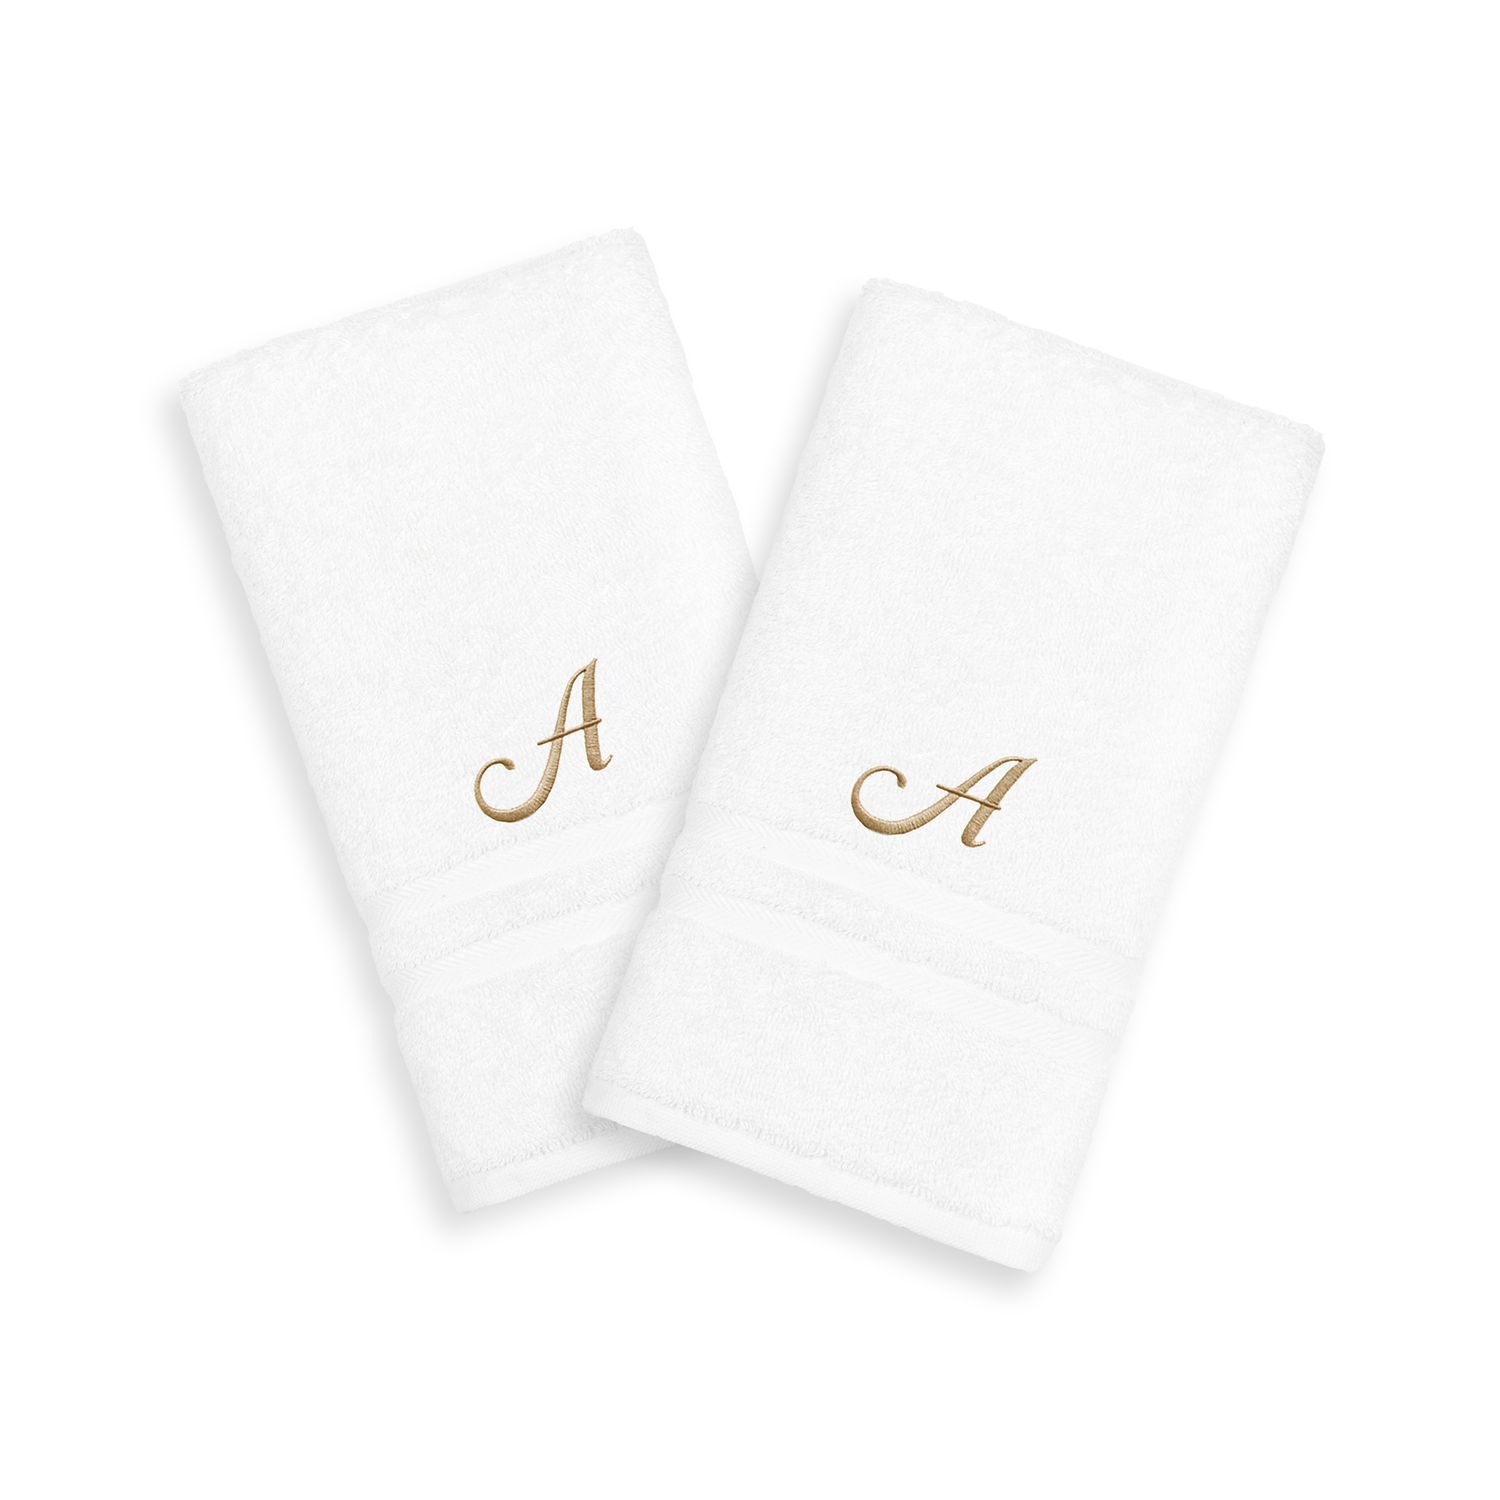 Текстиль для дома Linum, золотистые полотенца Denzi с одной буквой, 2 упаковки, полотенца для рук с монограммой